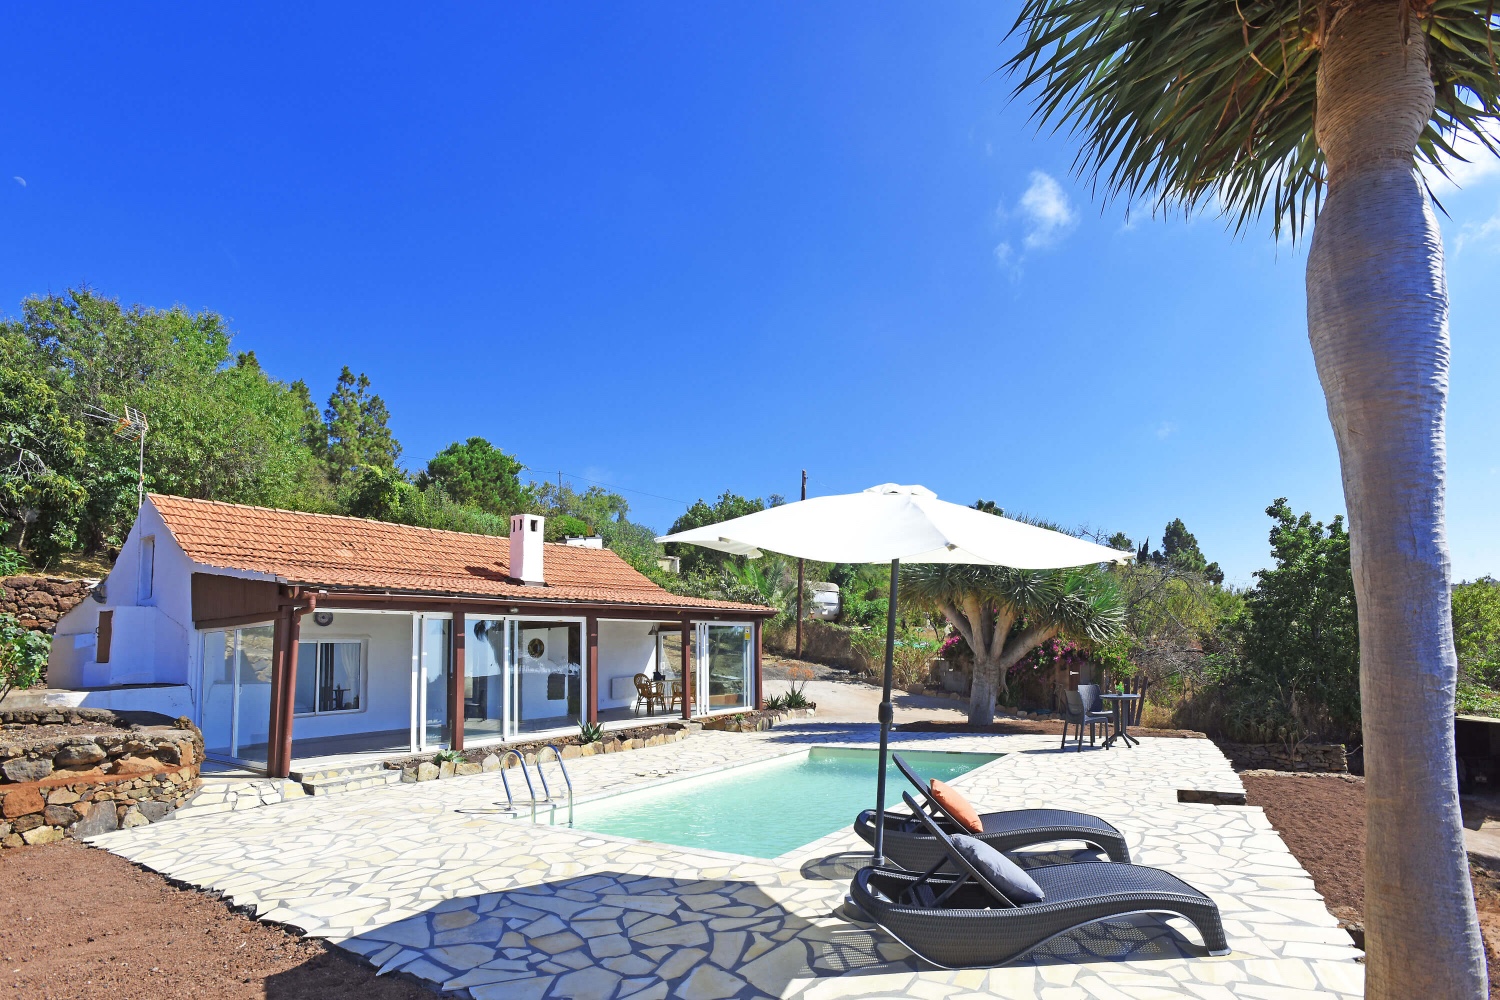 Moderní stylový rekreační dům s velkými venkovními plochami a soukromým bazénem v Puntagordě